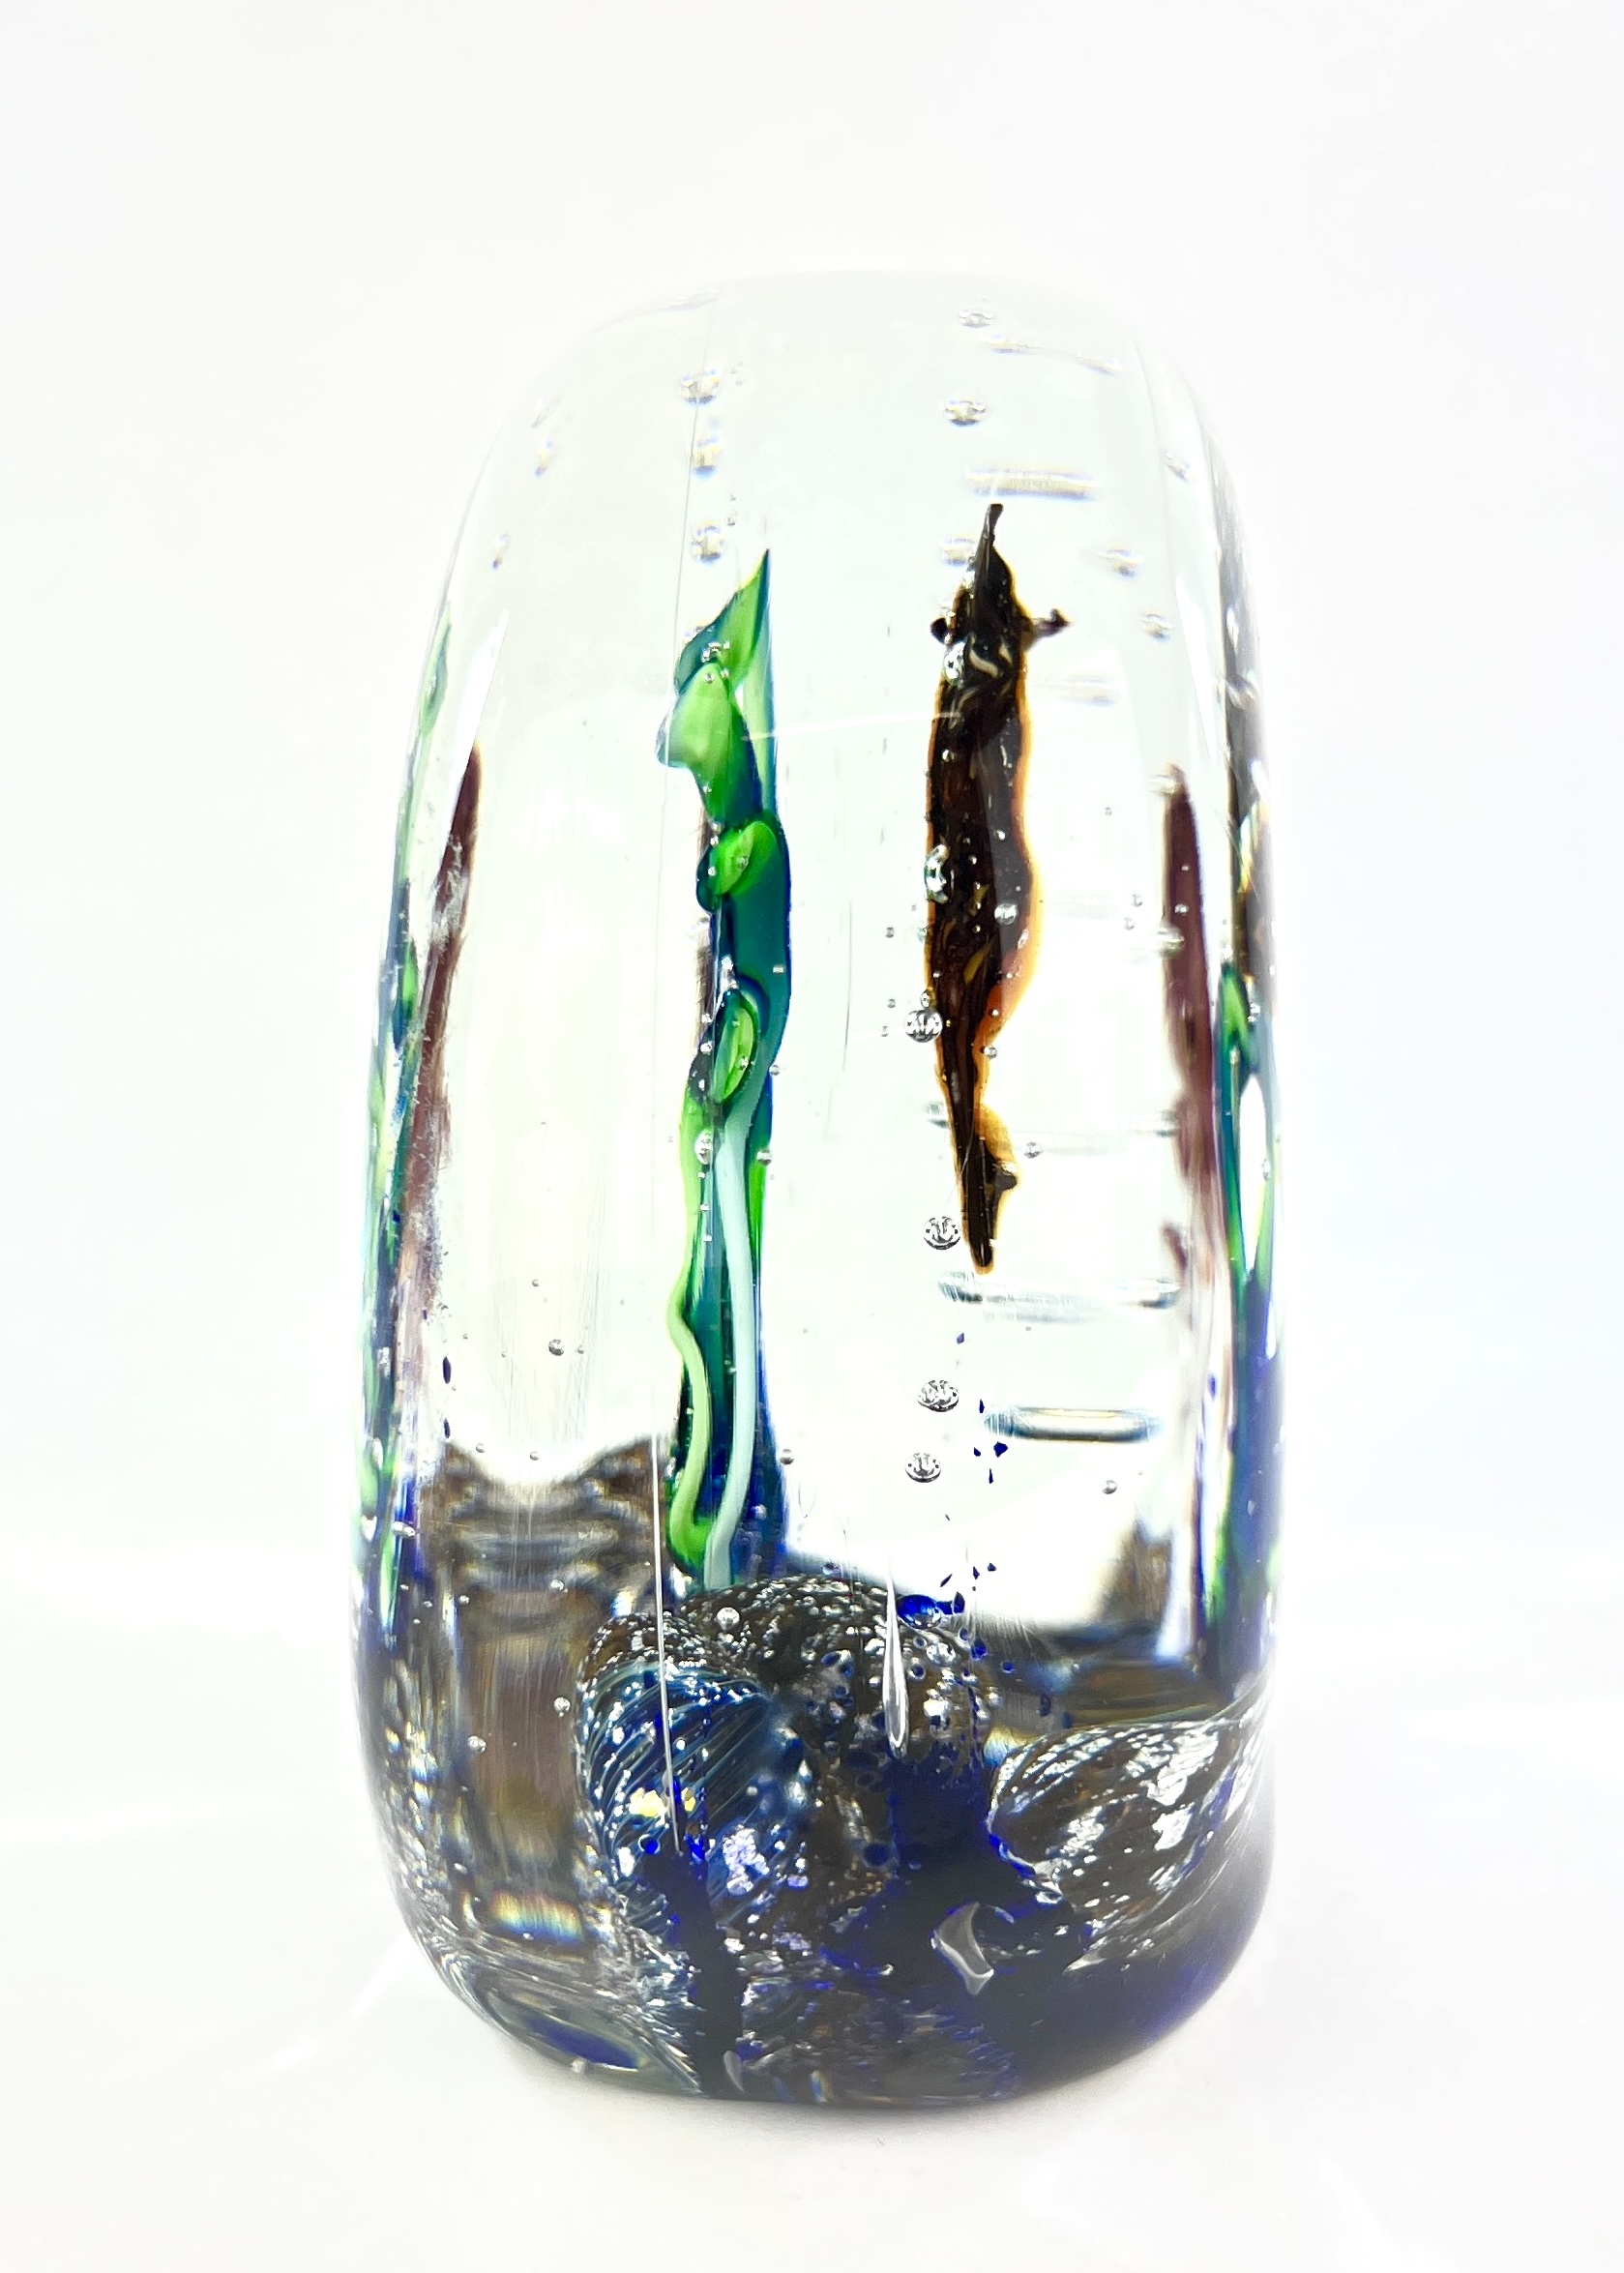 Mediterraneo - Murano Glass Aquarium With 4 Elements - Unique Piece 1/1